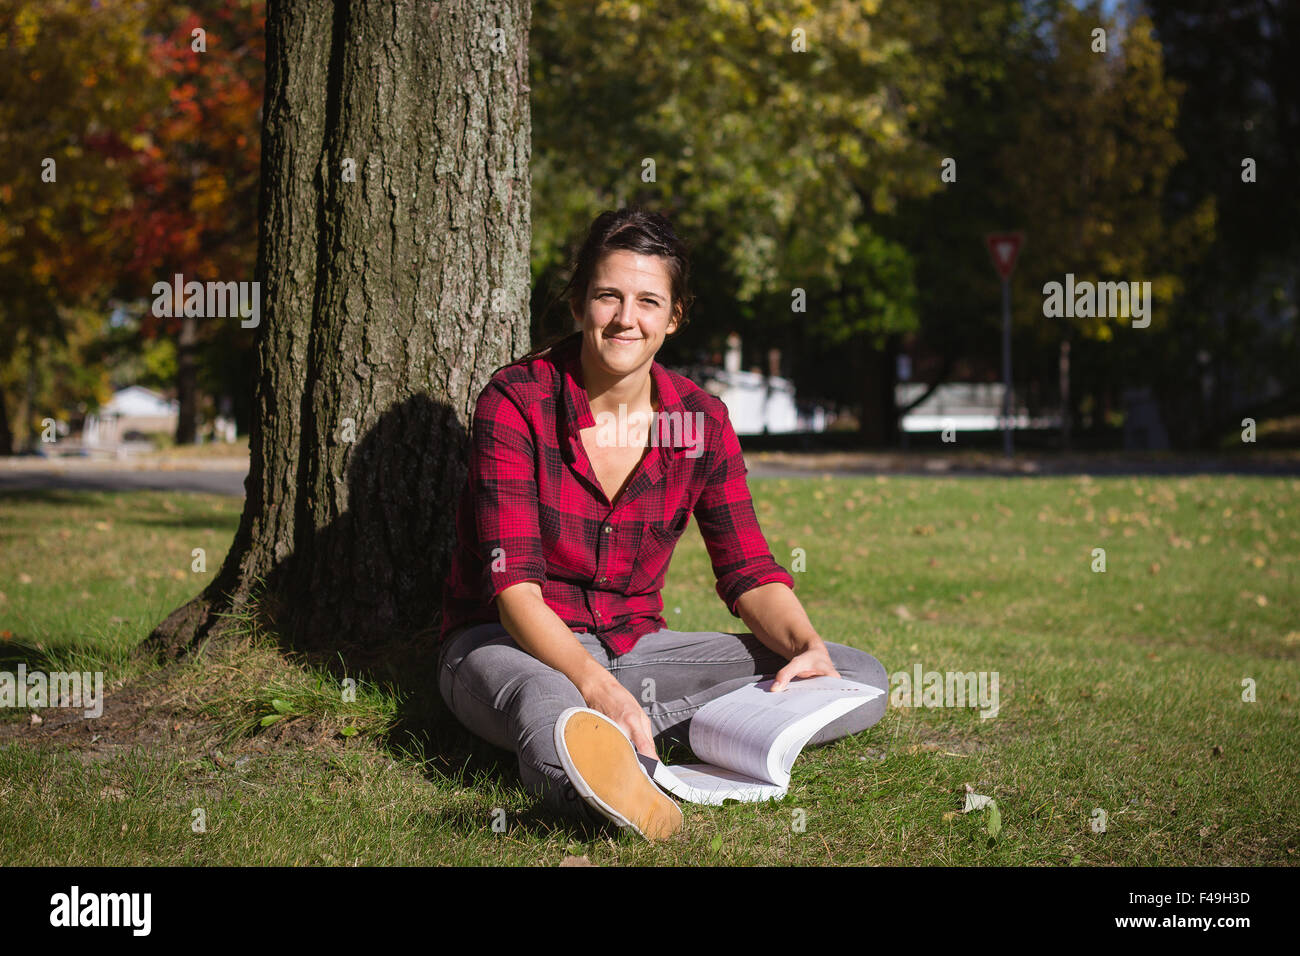 Las mujeres que estudian en el exterior de libros escolares caen en el día Foto de stock